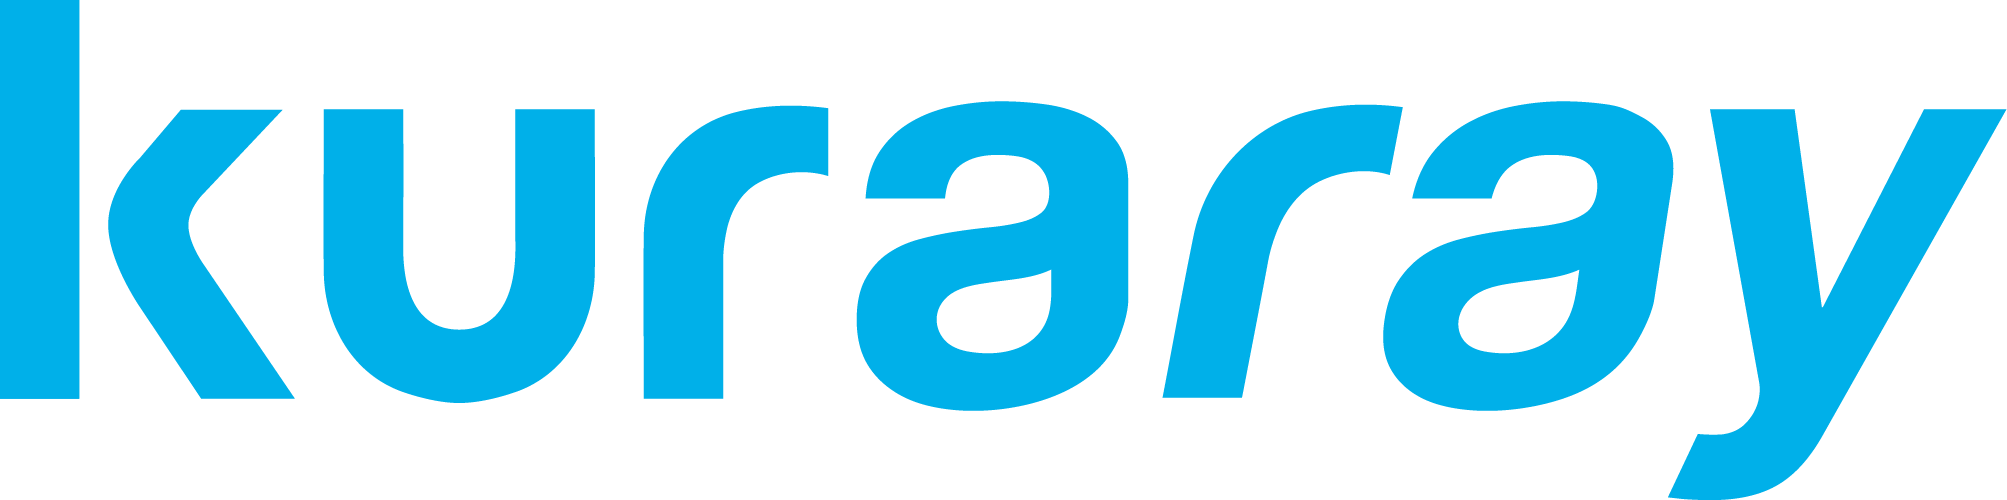 Kuraray Co., Ltd._logo